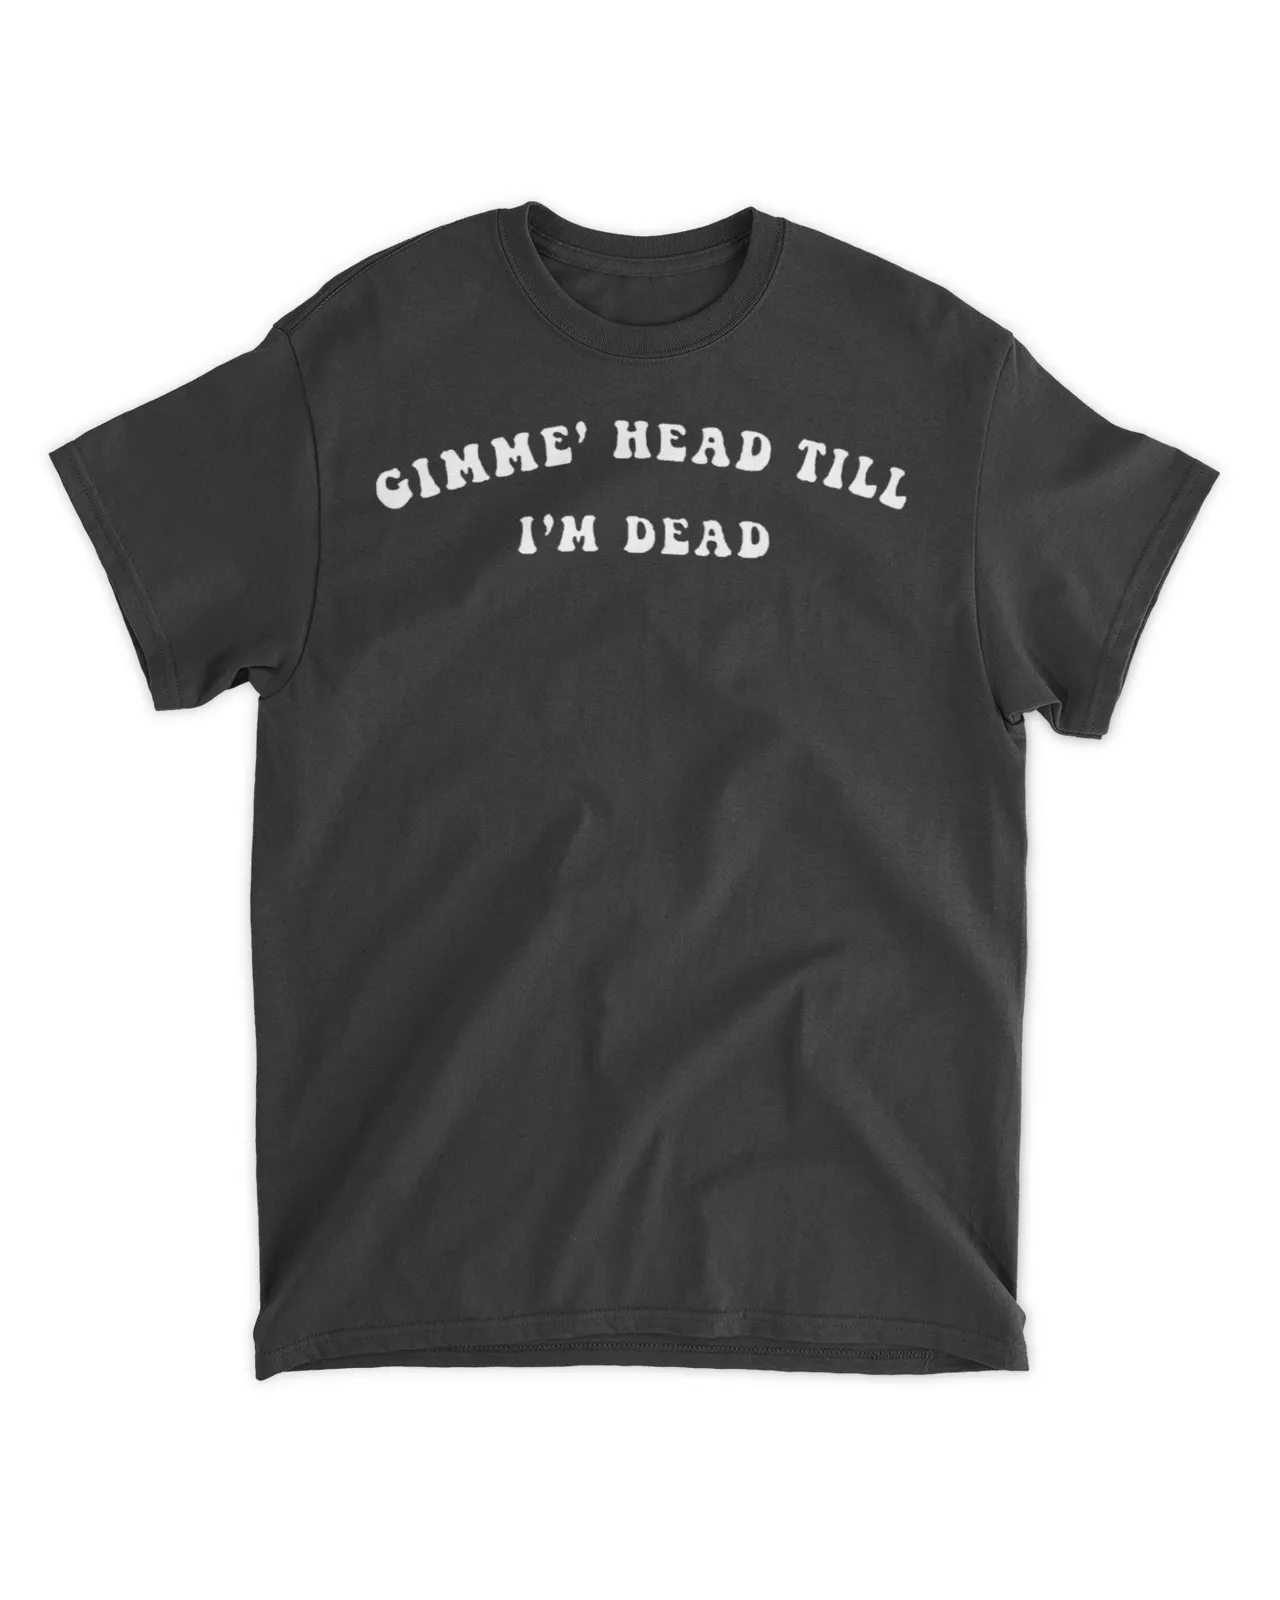  Gimme head till I'm dead shirt